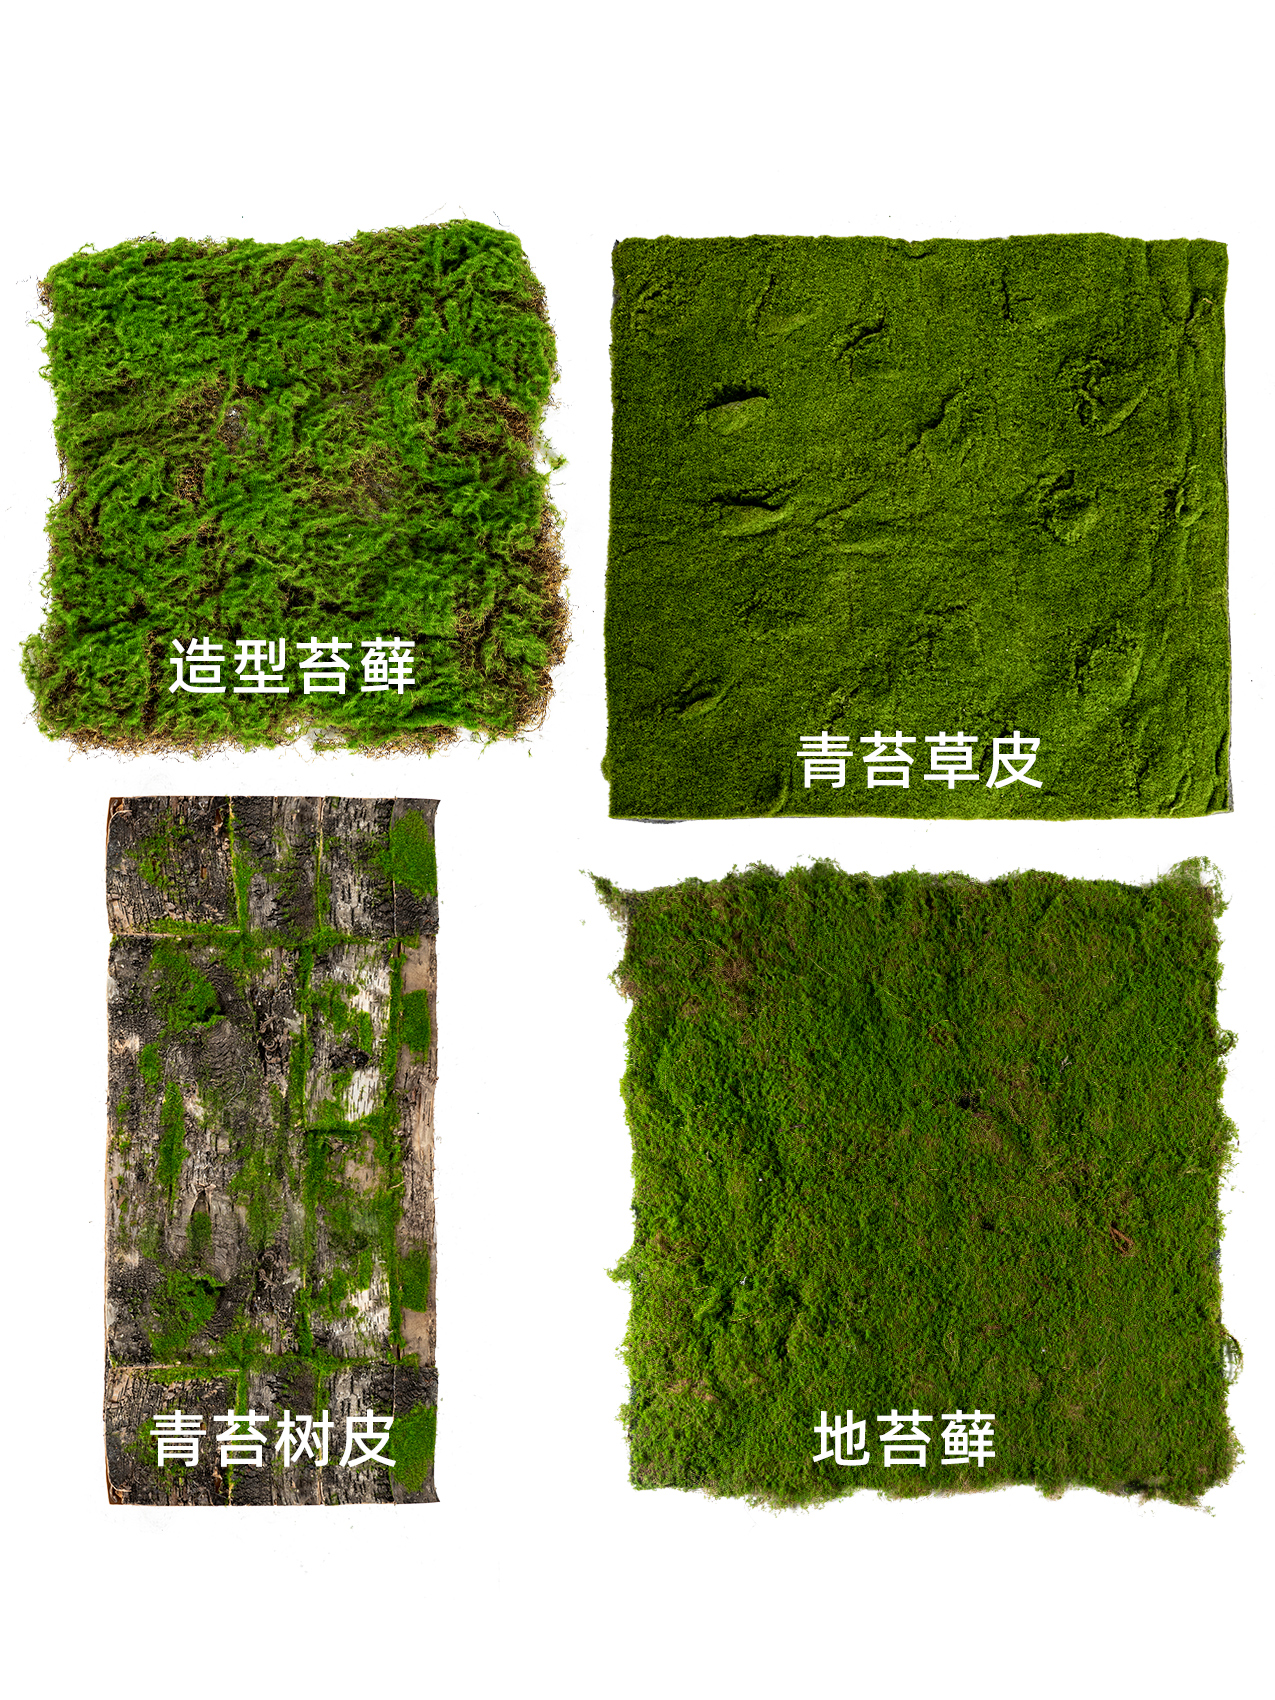 栩栩如生綠植仿真植絨假青苔苔蘚皮塊人工人造草皮草坪室內造景裝飾